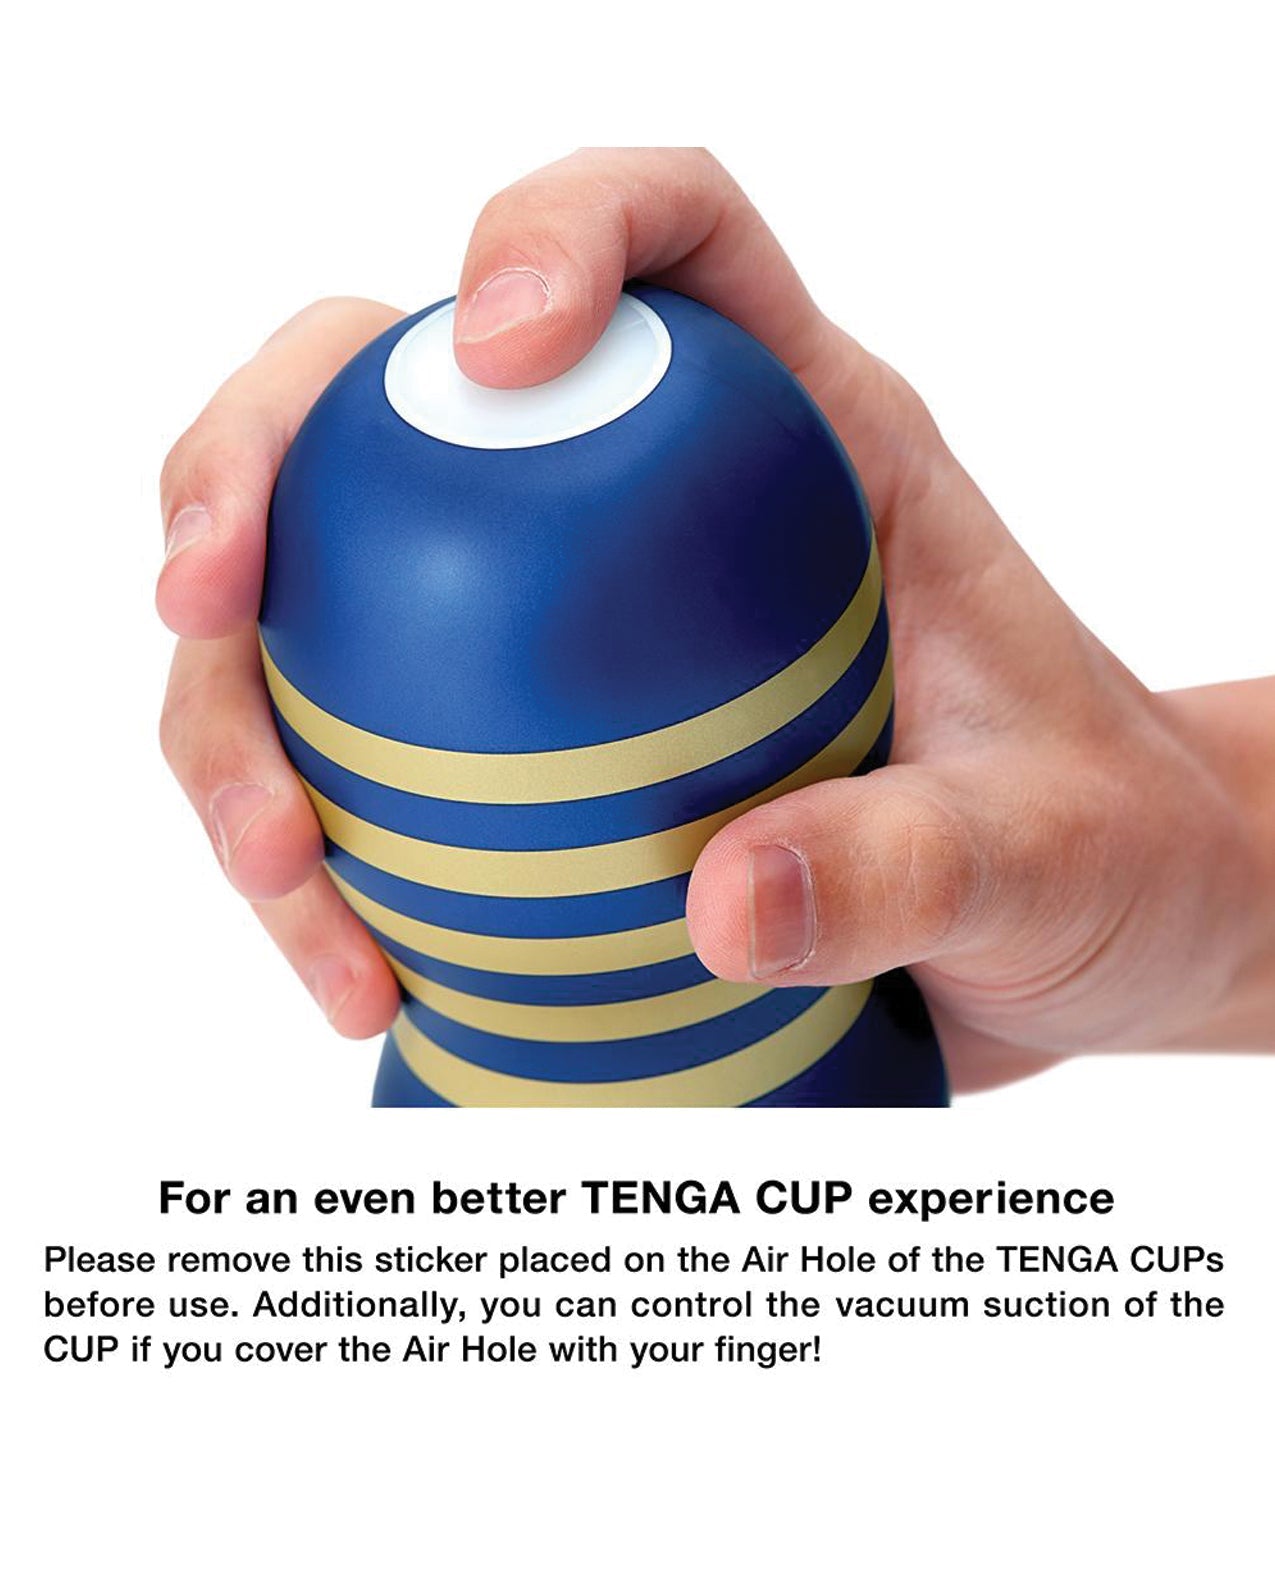 Get Tenga Premium Original Vacuum Cup - Gentle